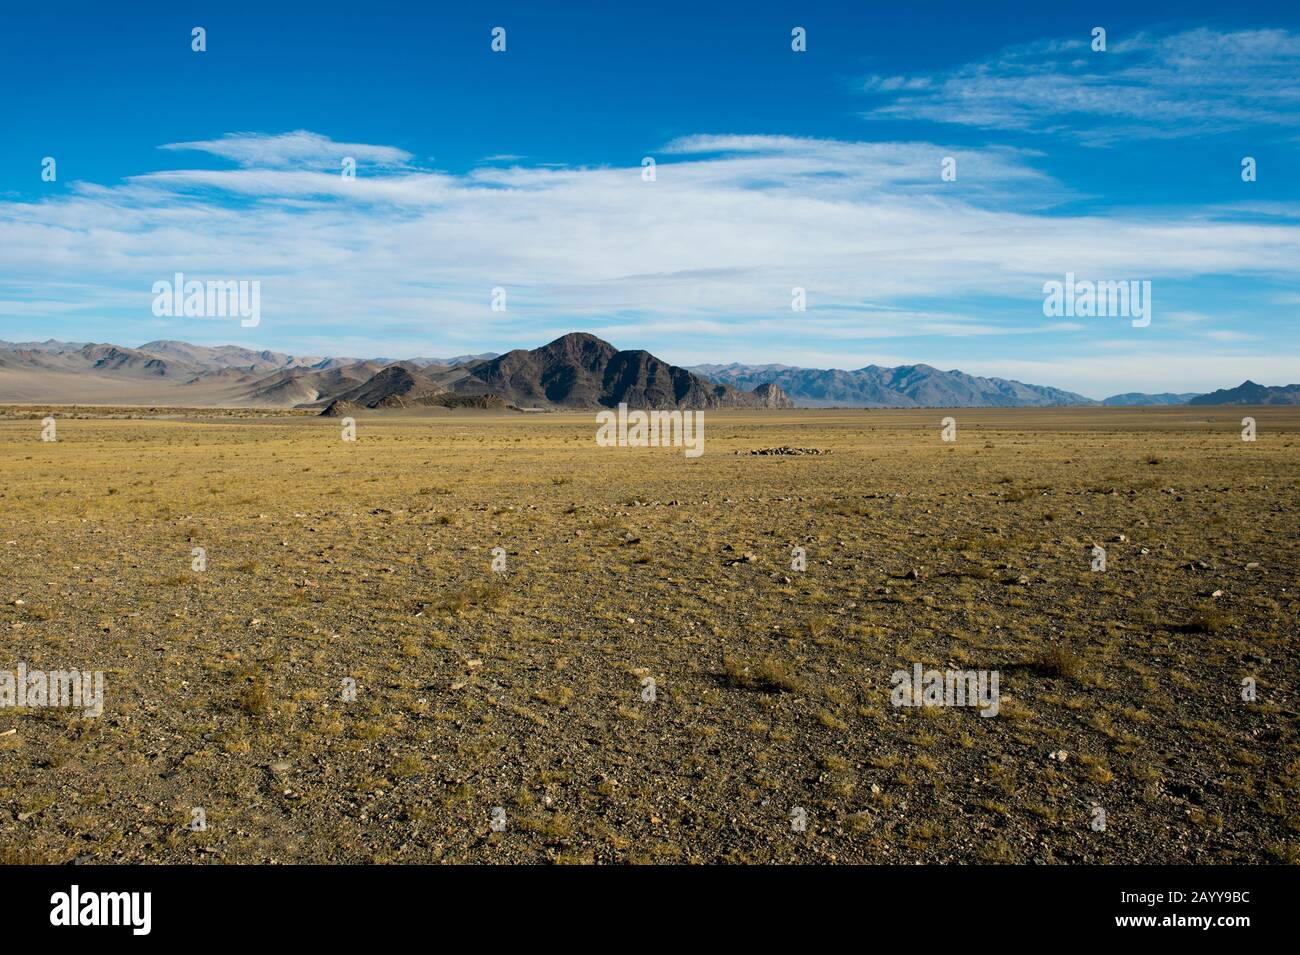 Paesaggio arido vicino alla città di Ulgii (Ölgii) nella provincia di Bayan-Ulgii nella Mongolia occidentale. Foto Stock